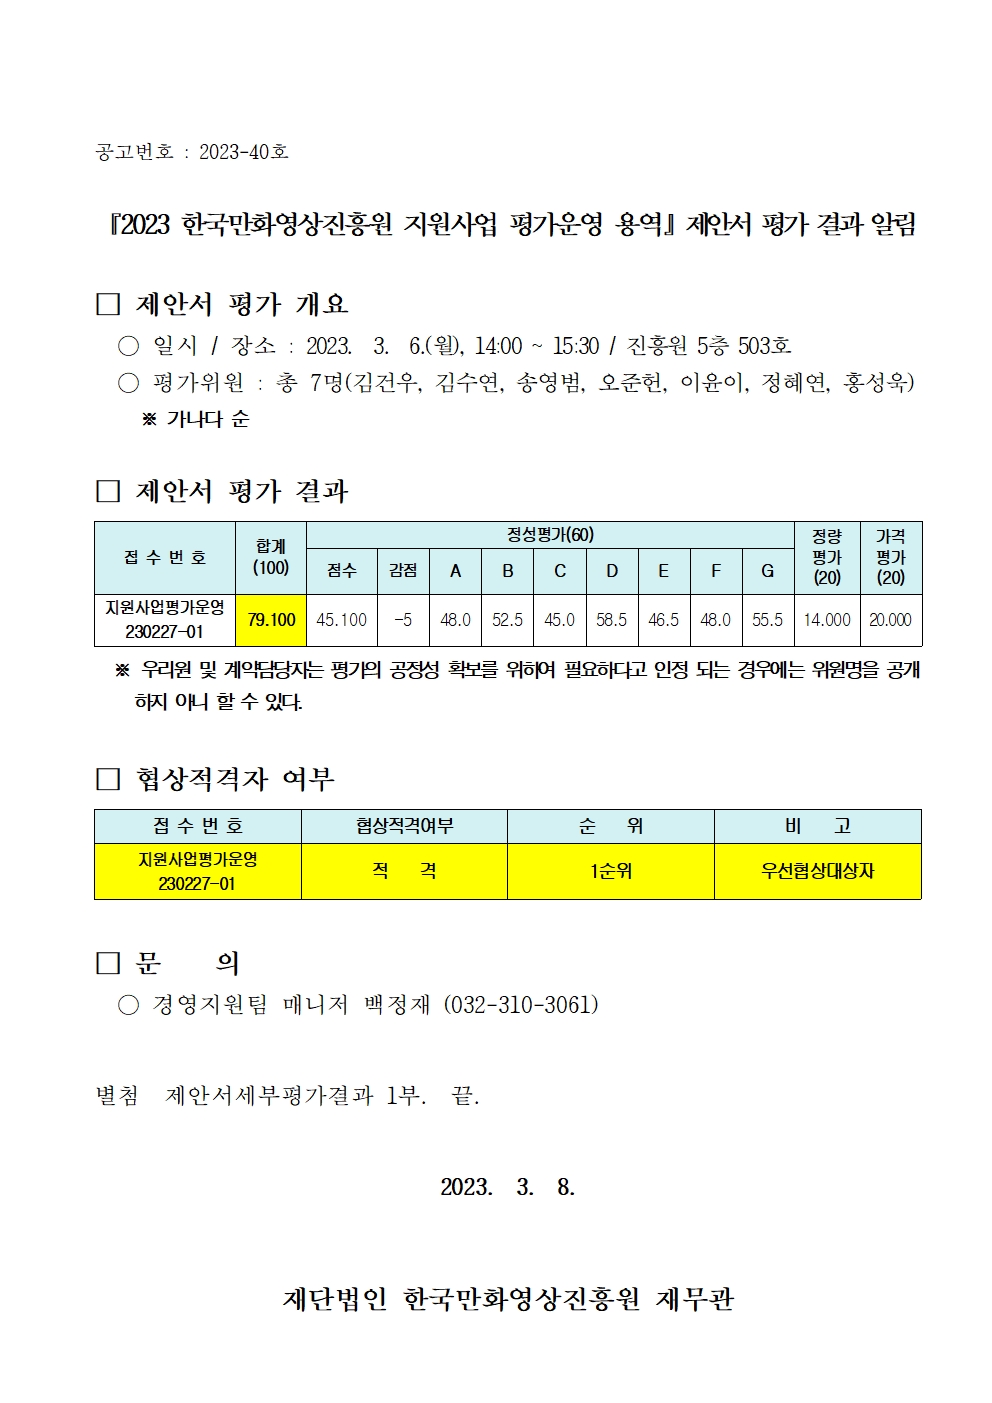 『2023 한국만화영상진흥원 지원사업 평가운영 용역』 제안서 평가 결과 알림